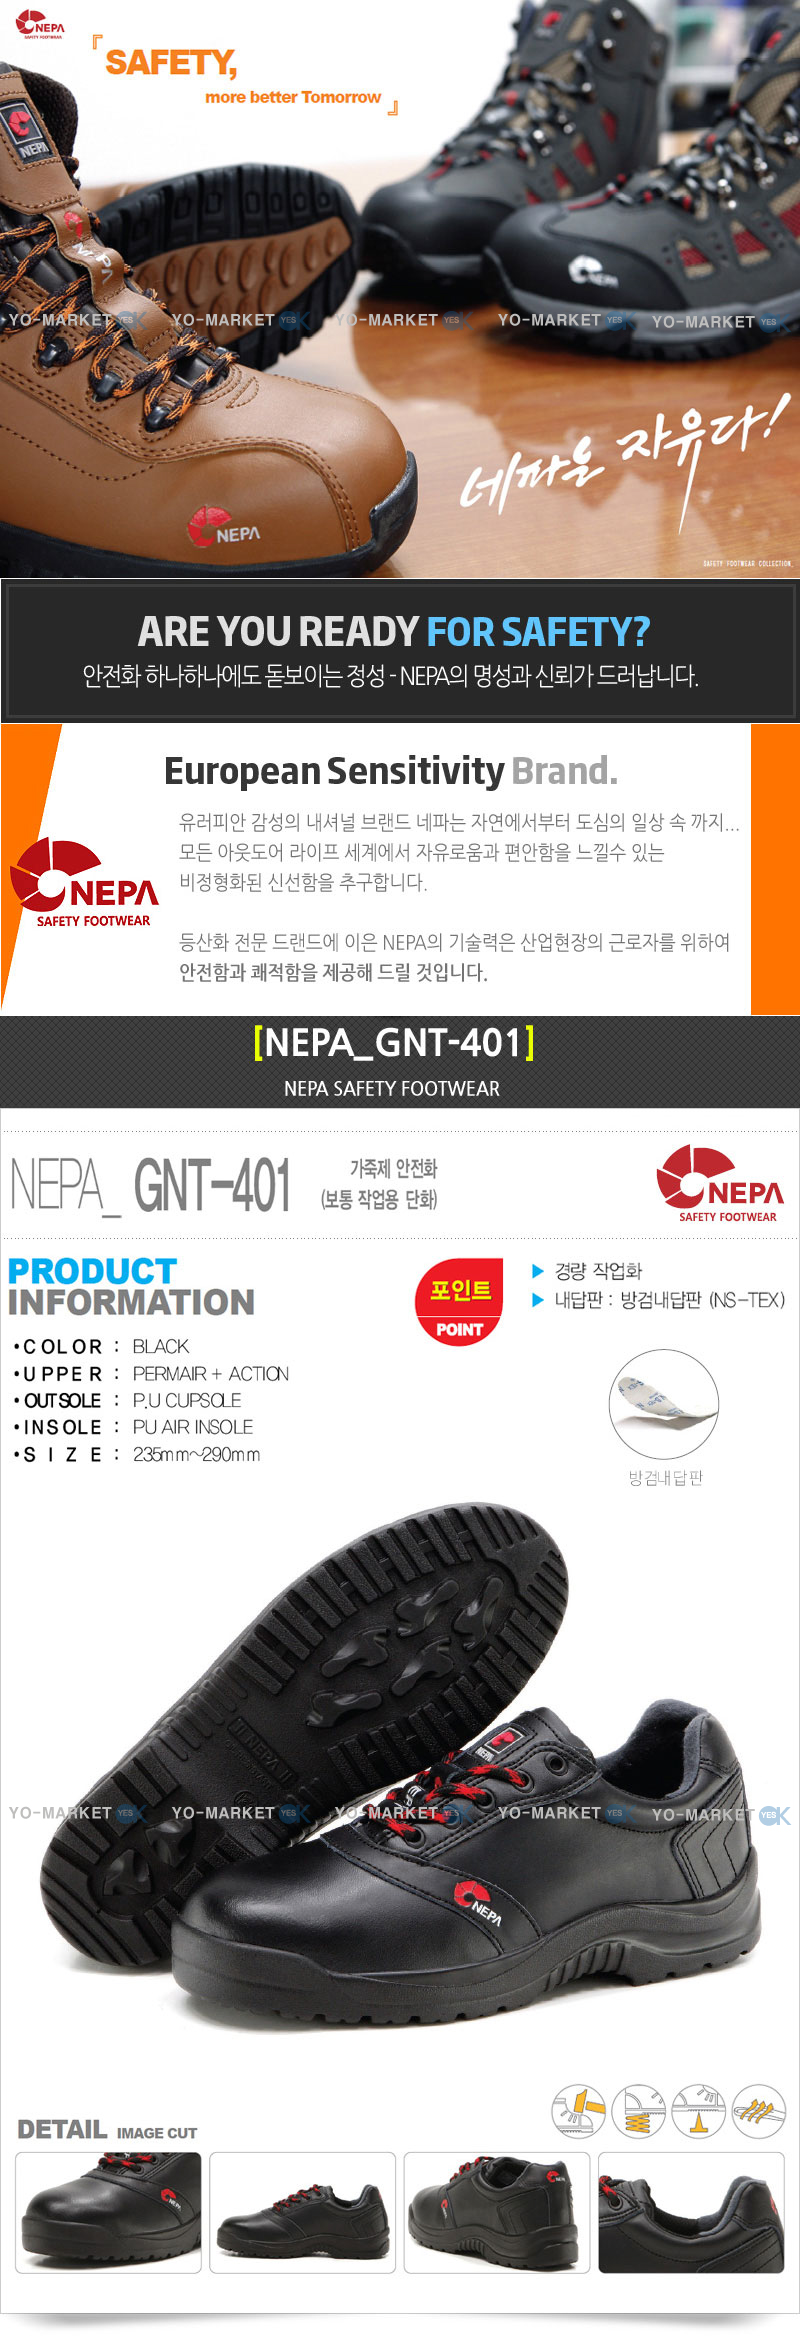 네파-GNT-401 (1).jpg